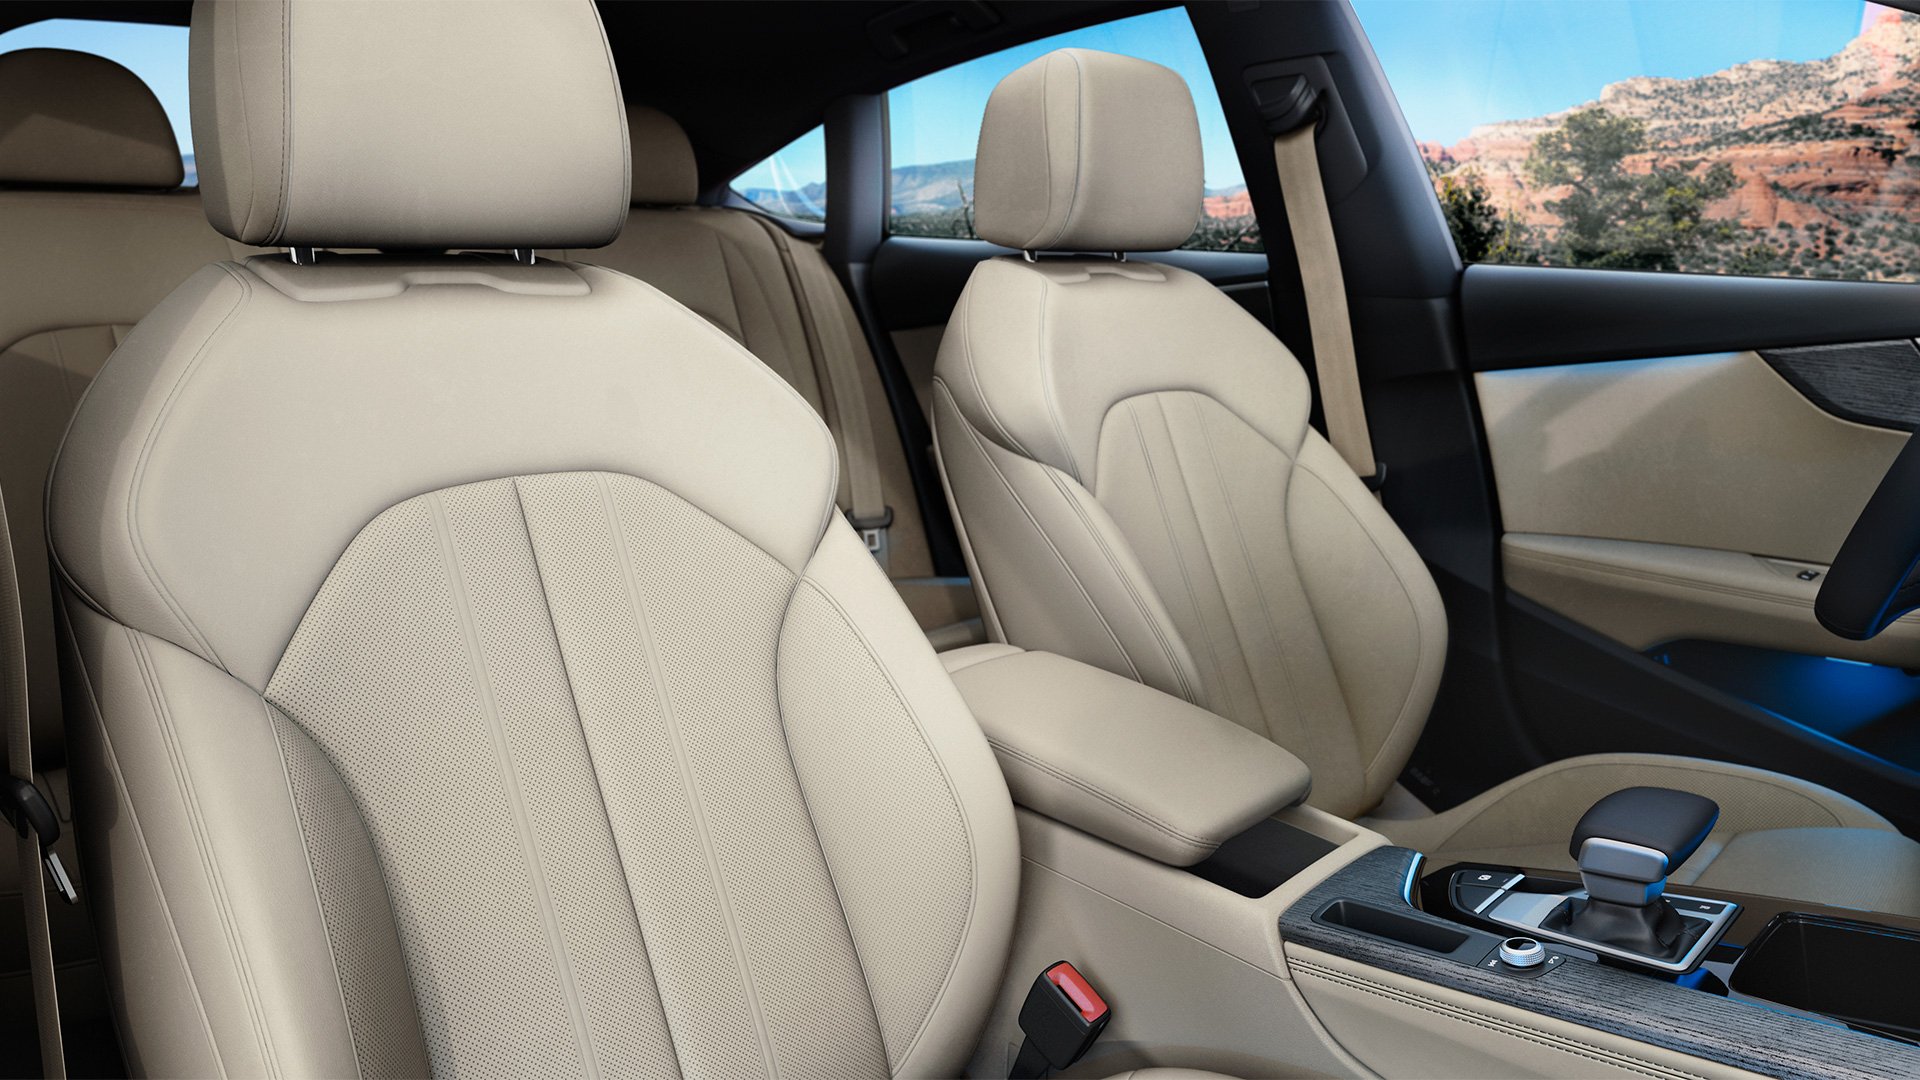 Audi A5 interior - Seats